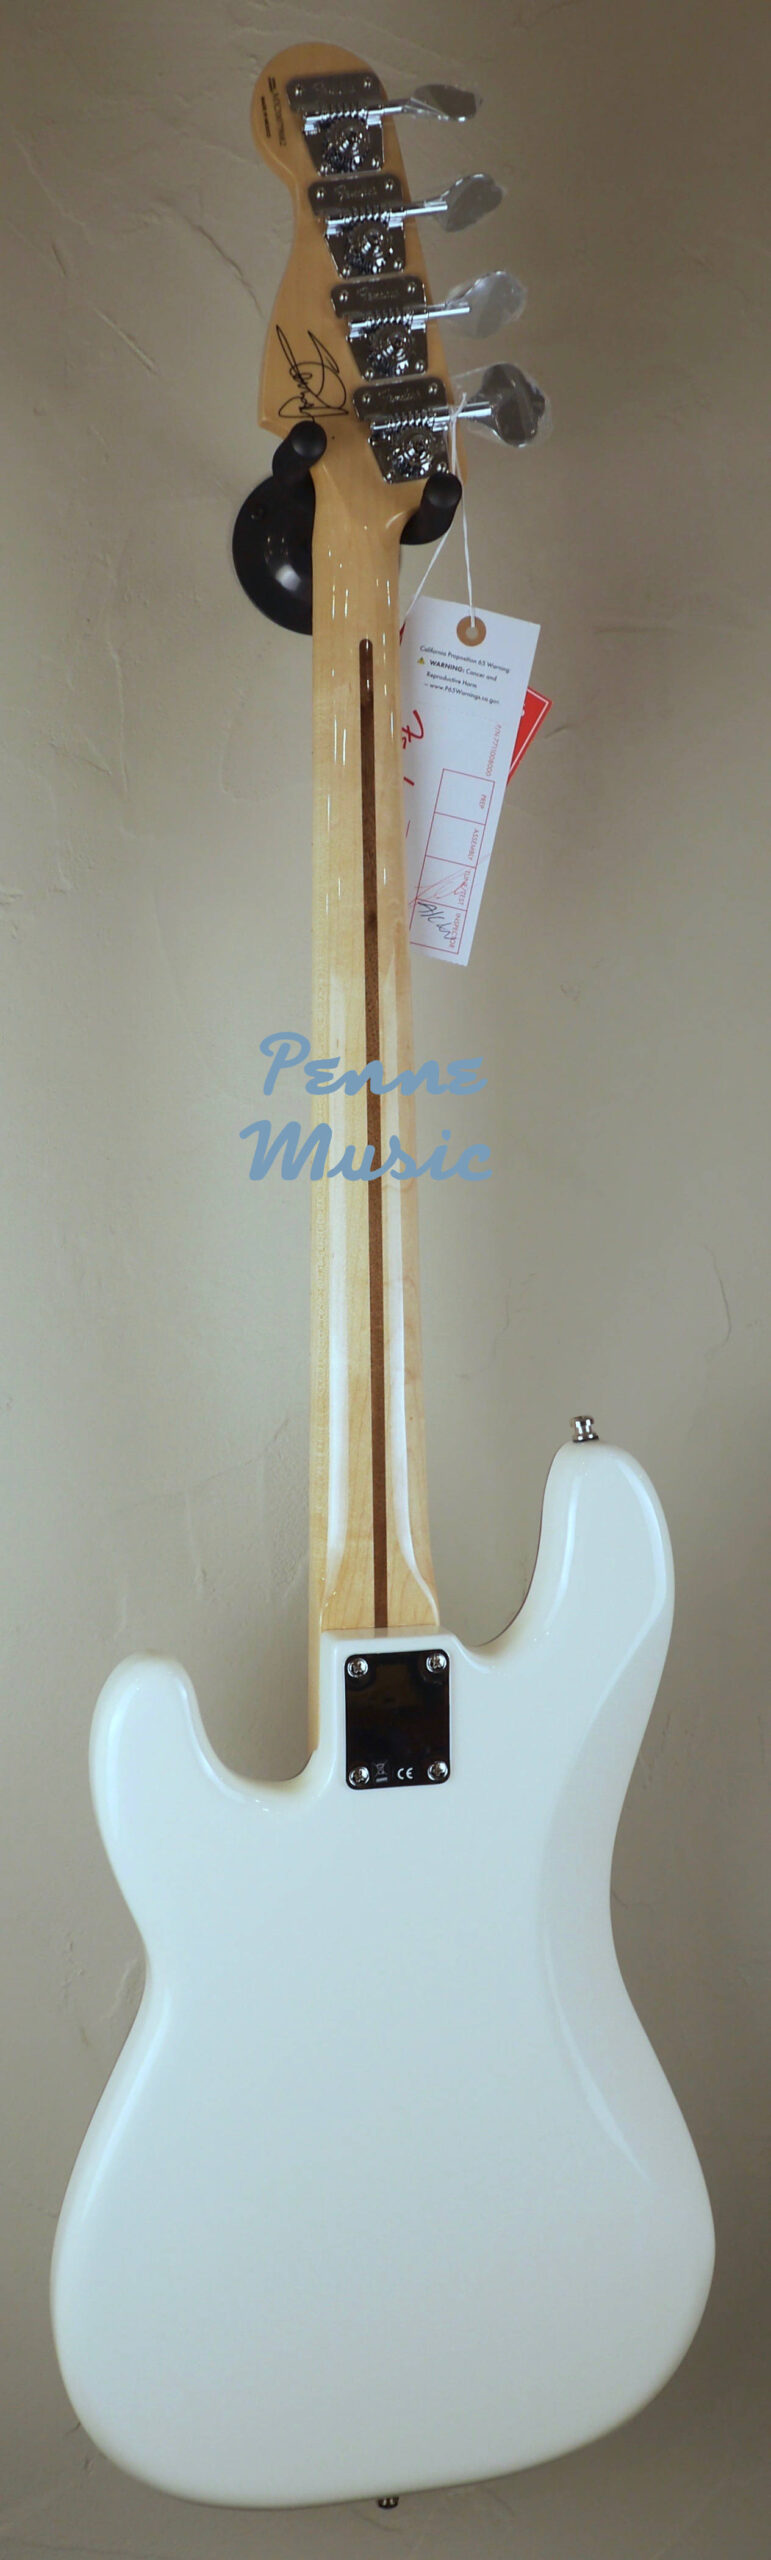 Fender Steve Harris Precision Bass Olympic White 2